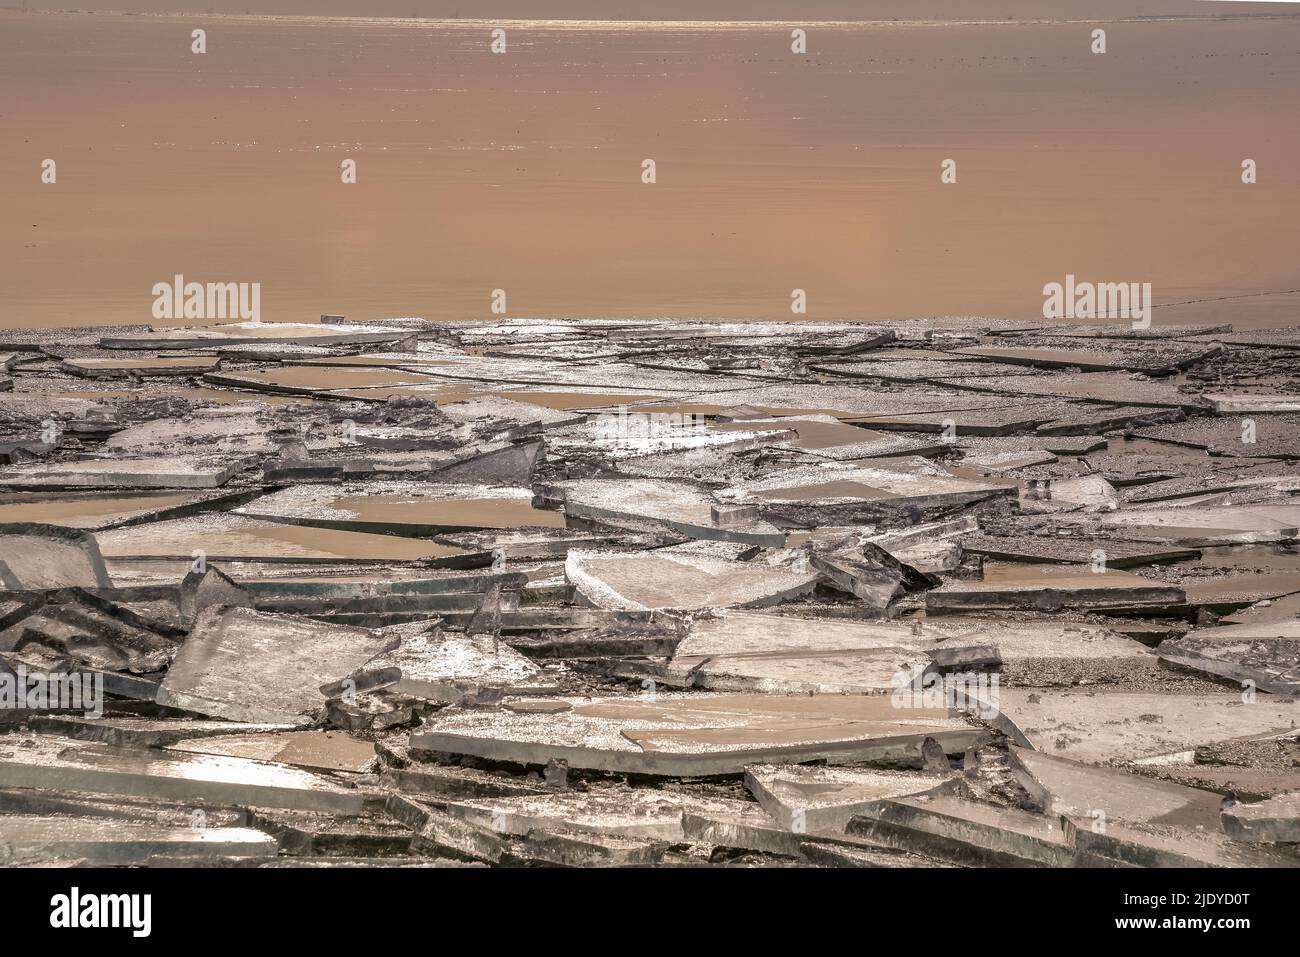 Wijdenes, pays-Bas - 14 février 2021. Glace pilée et glace flottante le long de la rive de Markermeer, pays-Bas Banque D'Images